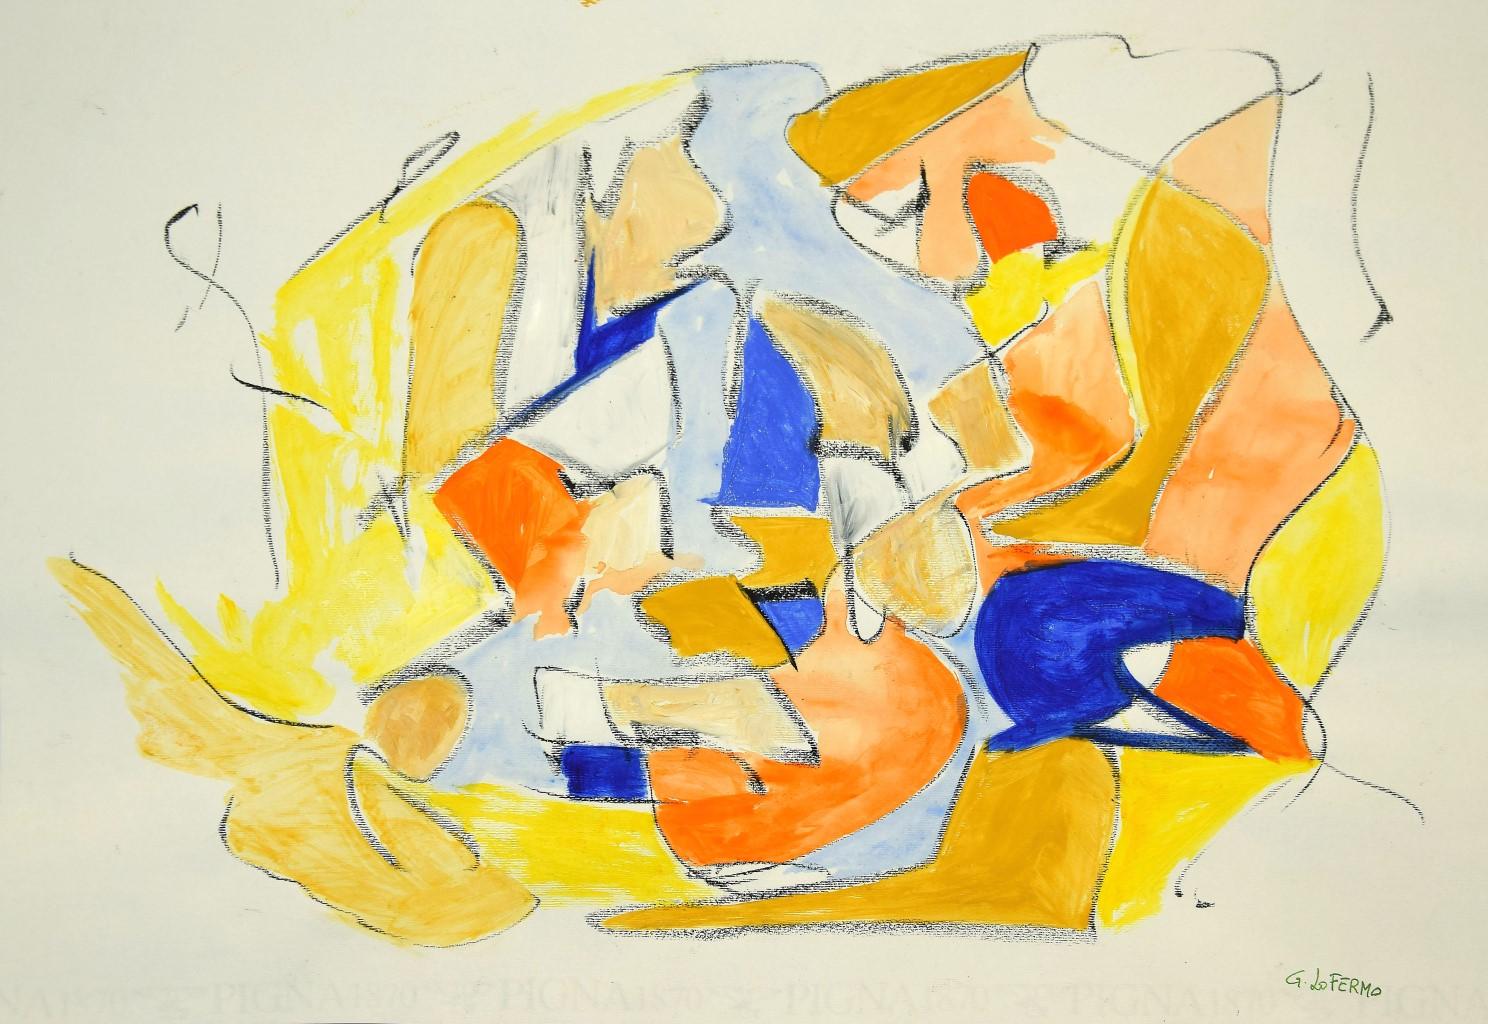 Abstract Painting Giorgio Lo Fermo - Composition géométrique abstraite - Techniques mixtes sur papier  - 2020